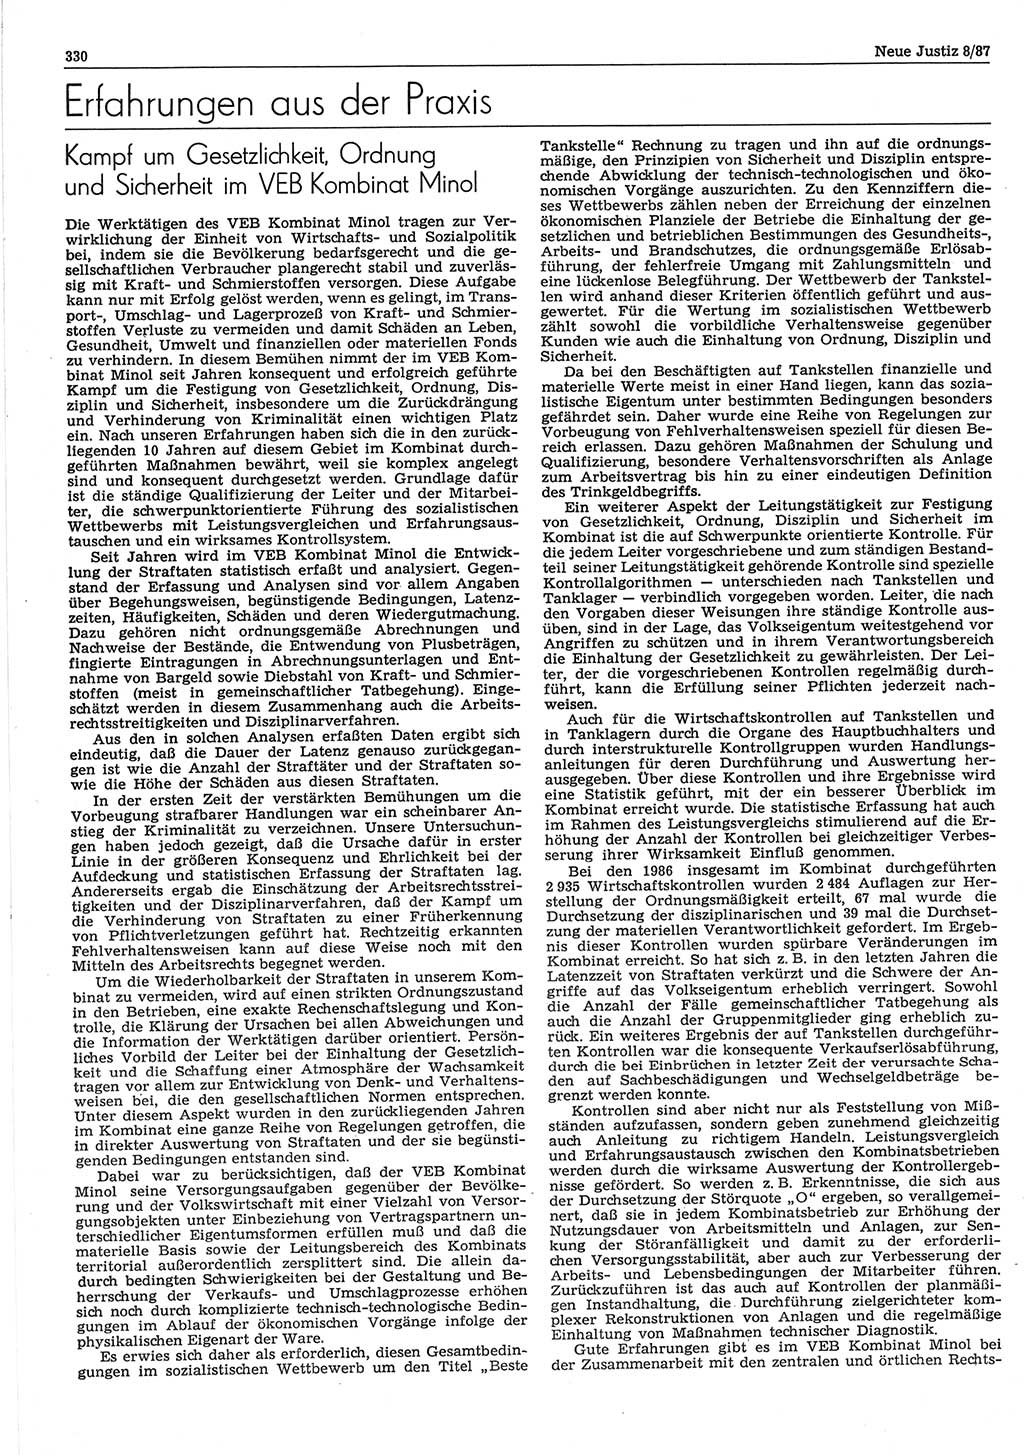 Neue Justiz (NJ), Zeitschrift für sozialistisches Recht und Gesetzlichkeit [Deutsche Demokratische Republik (DDR)], 41. Jahrgang 1987, Seite 330 (NJ DDR 1987, S. 330)